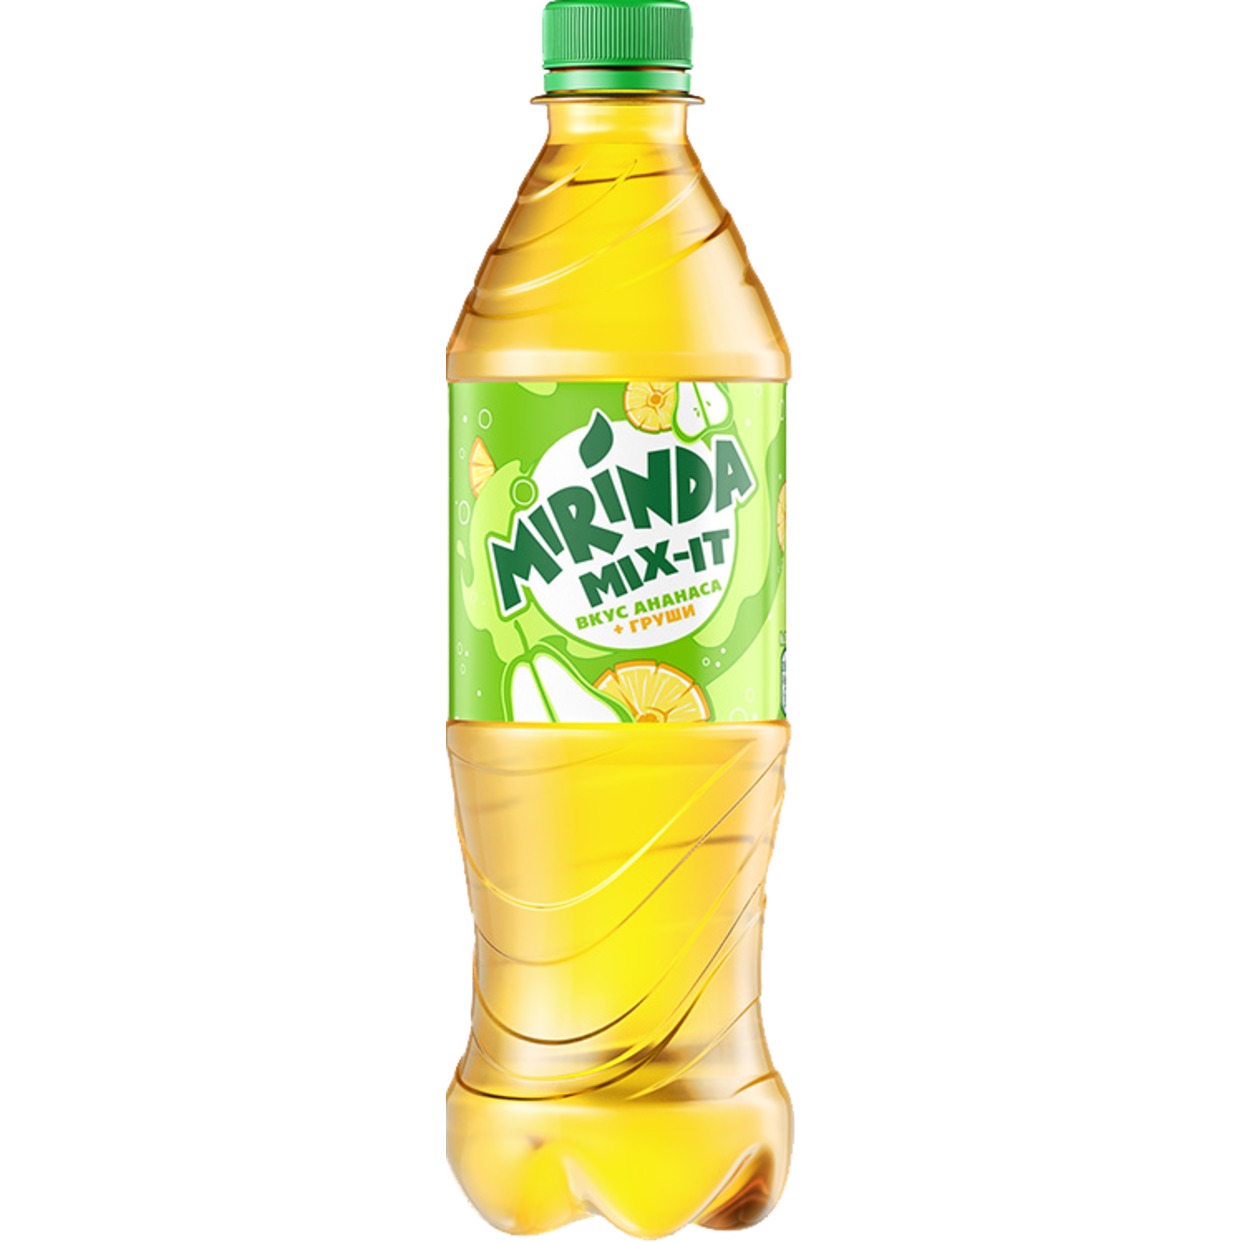 Напиток безалкогольный сильногазированный "Миринда Микс-Ит" со вкусом Ананаса и Груши 0.5л по акции в Пятерочке